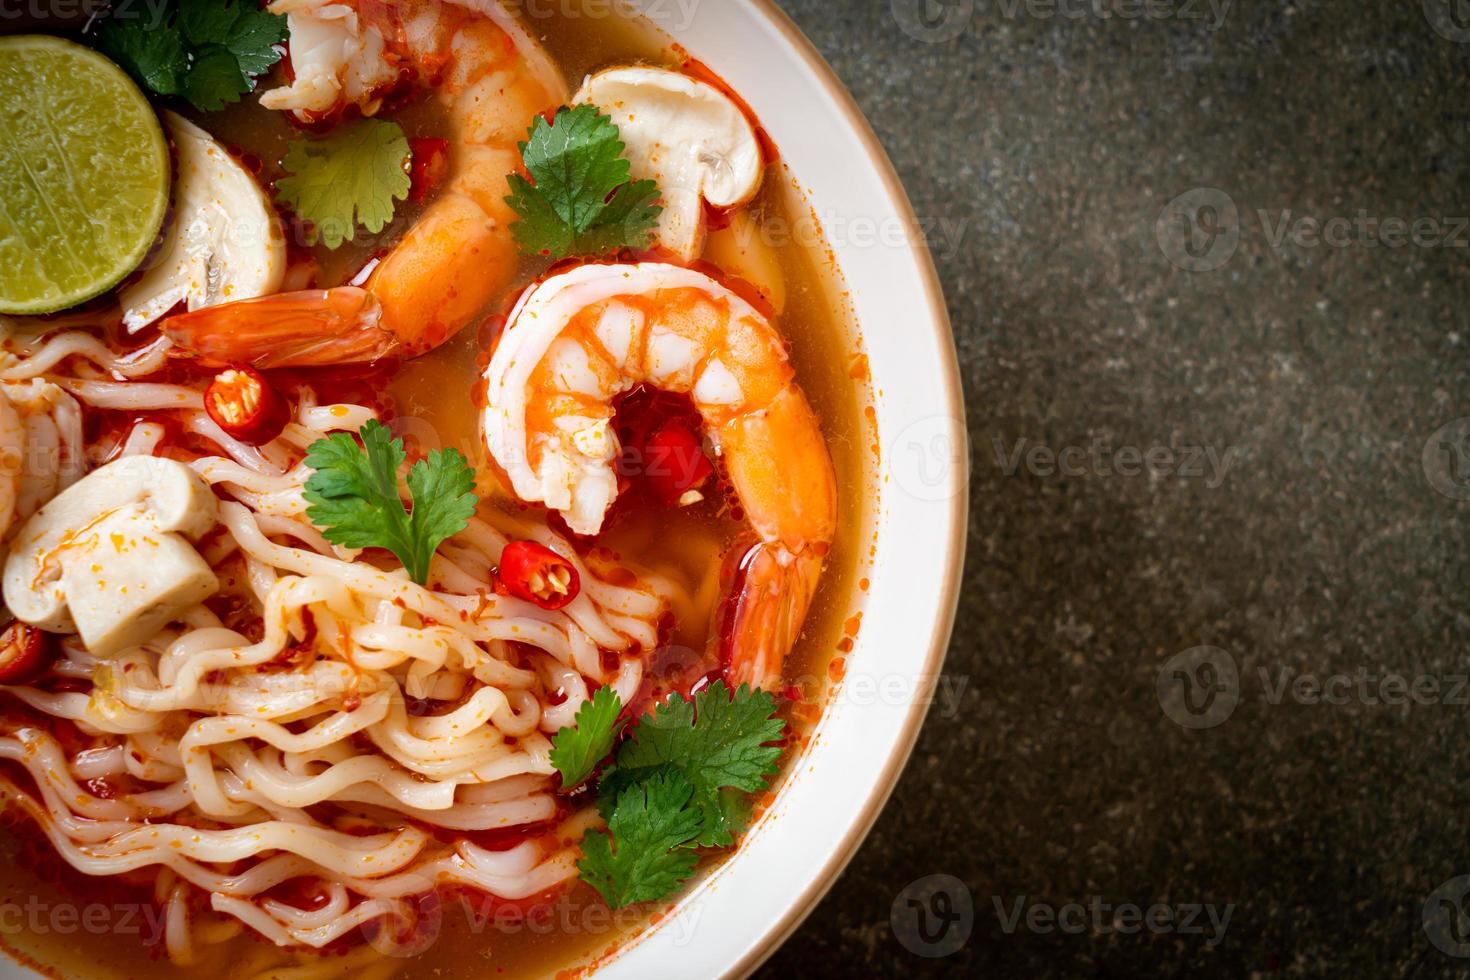 nouilles instantanées ramen dans une soupe épicée aux crevettes, ou tom yum kung - style cuisine asiatique photo